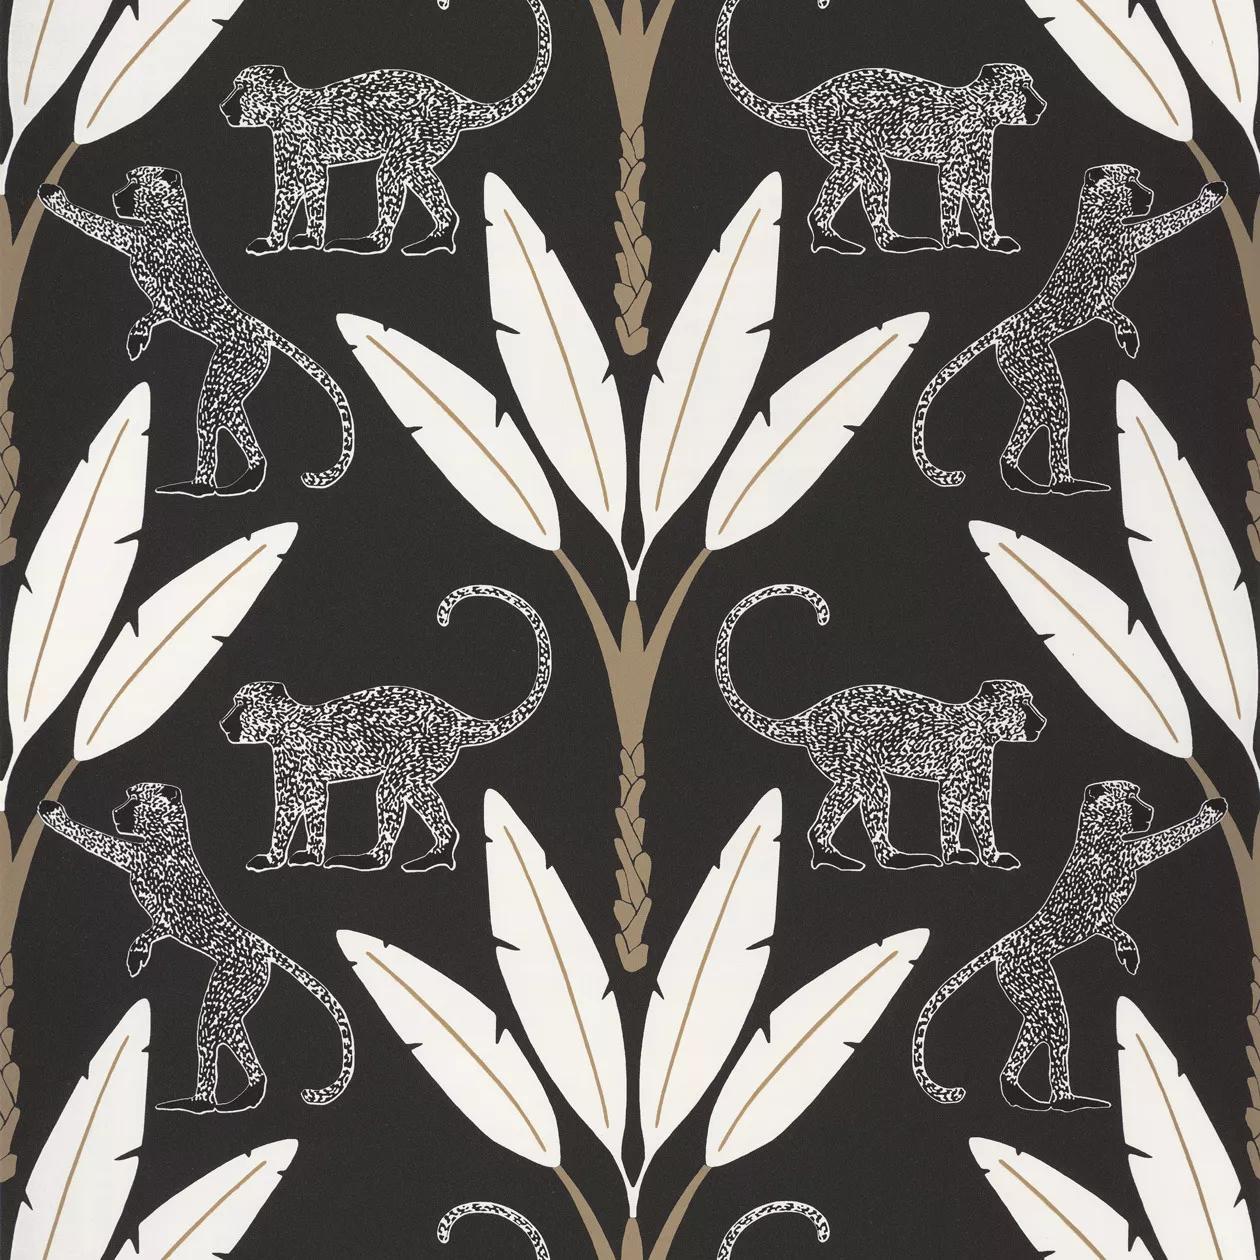 Orientális stílusú modern terópusi, majom mintás tapéta fekete-fehér színvilágban